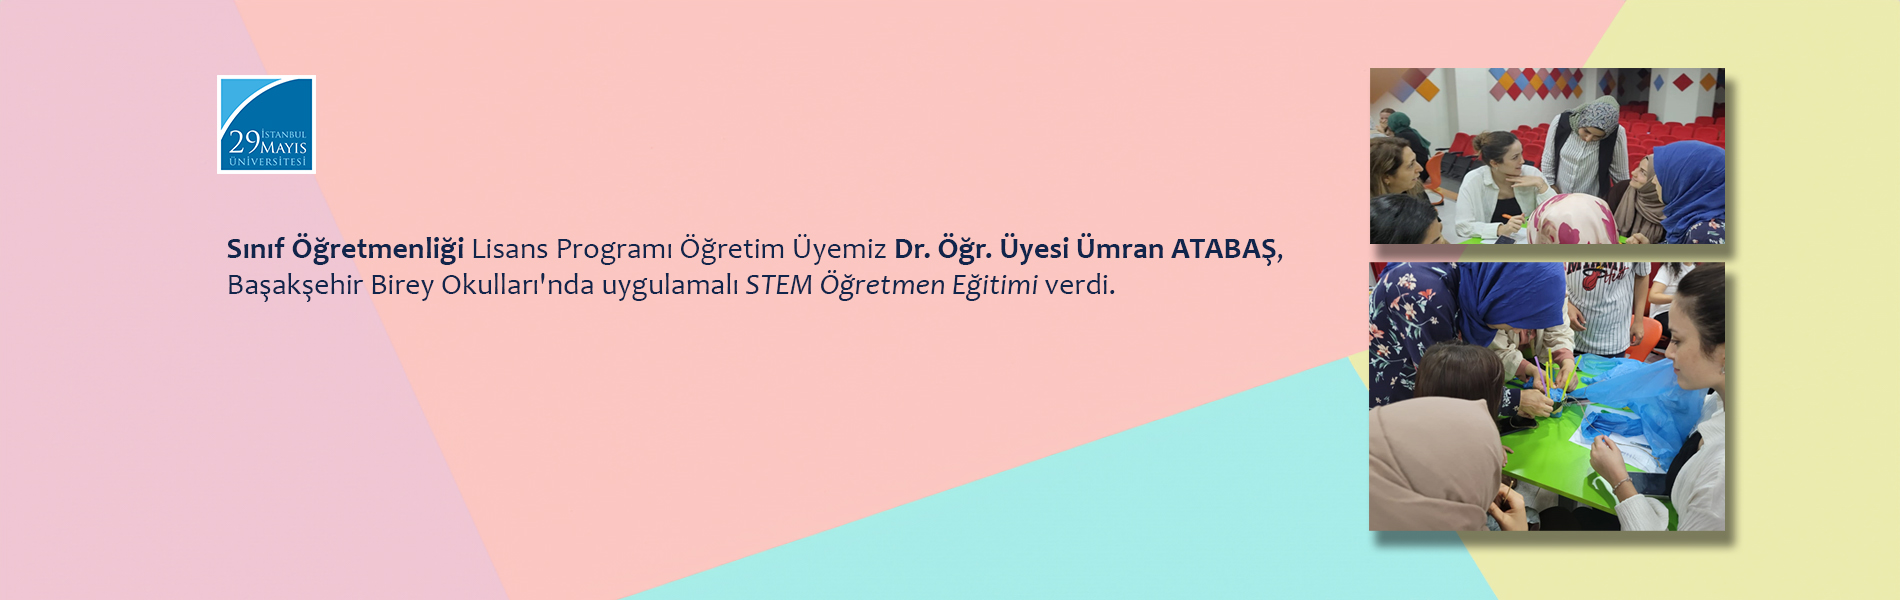 Dr. Öğr. Üyesi Ümran ATABAŞ, Başakşehir Birey Okulları'nda Uygulamalı STEM Öğretmen Eğitimi Verdi